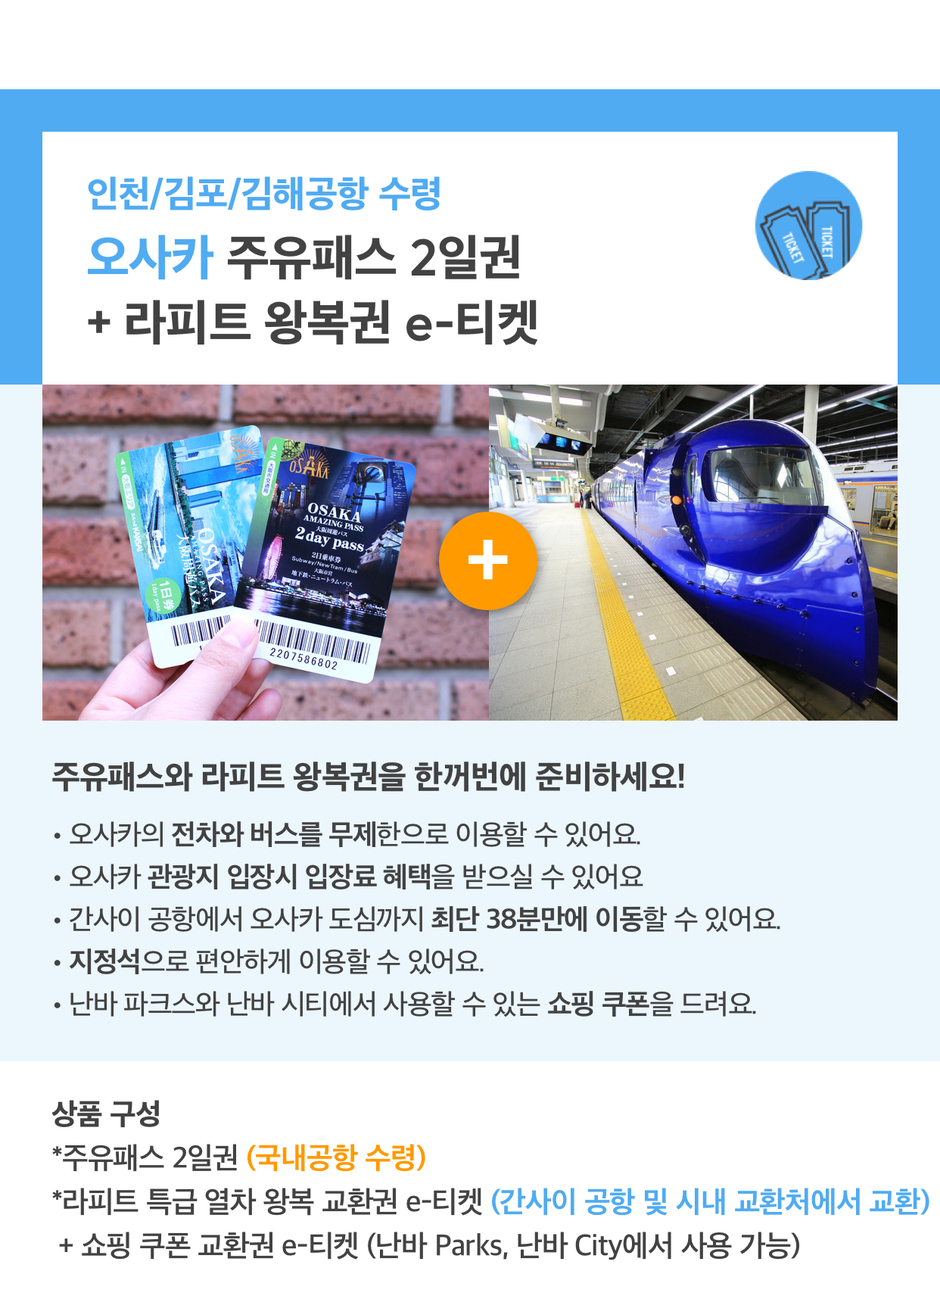 인천/김포/김해공항 수령] 주유패스 2일 + 라피트 왕복권 E-티켓 :: 나다운 진짜 여행